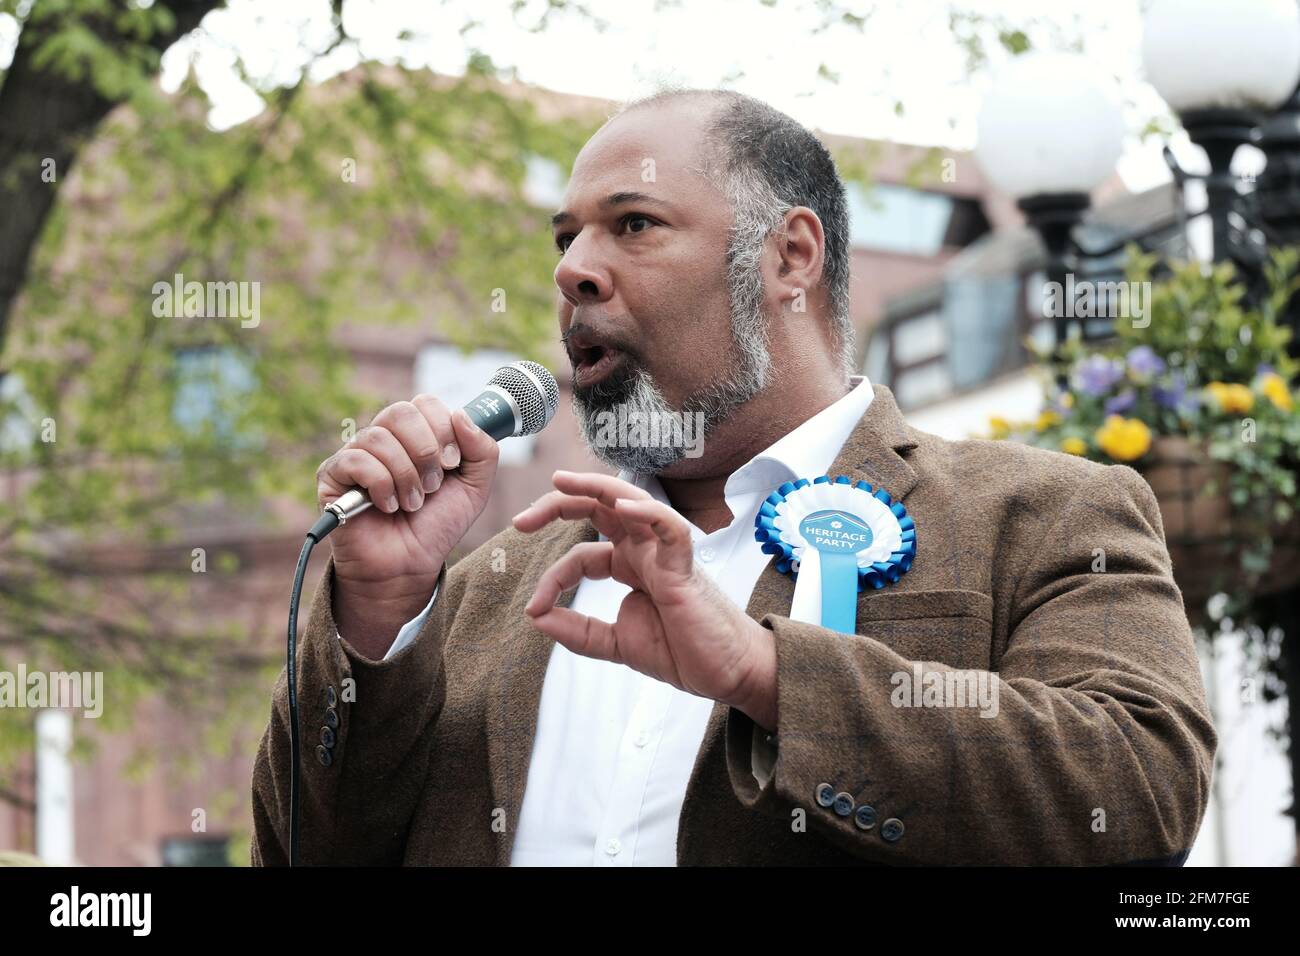 Candidato Mayoral di Londra per il Partito Culturale, David Kurten si rivolge ai manifestanti in una manifestazione contro i quartieri a basso traffico. Foto Stock